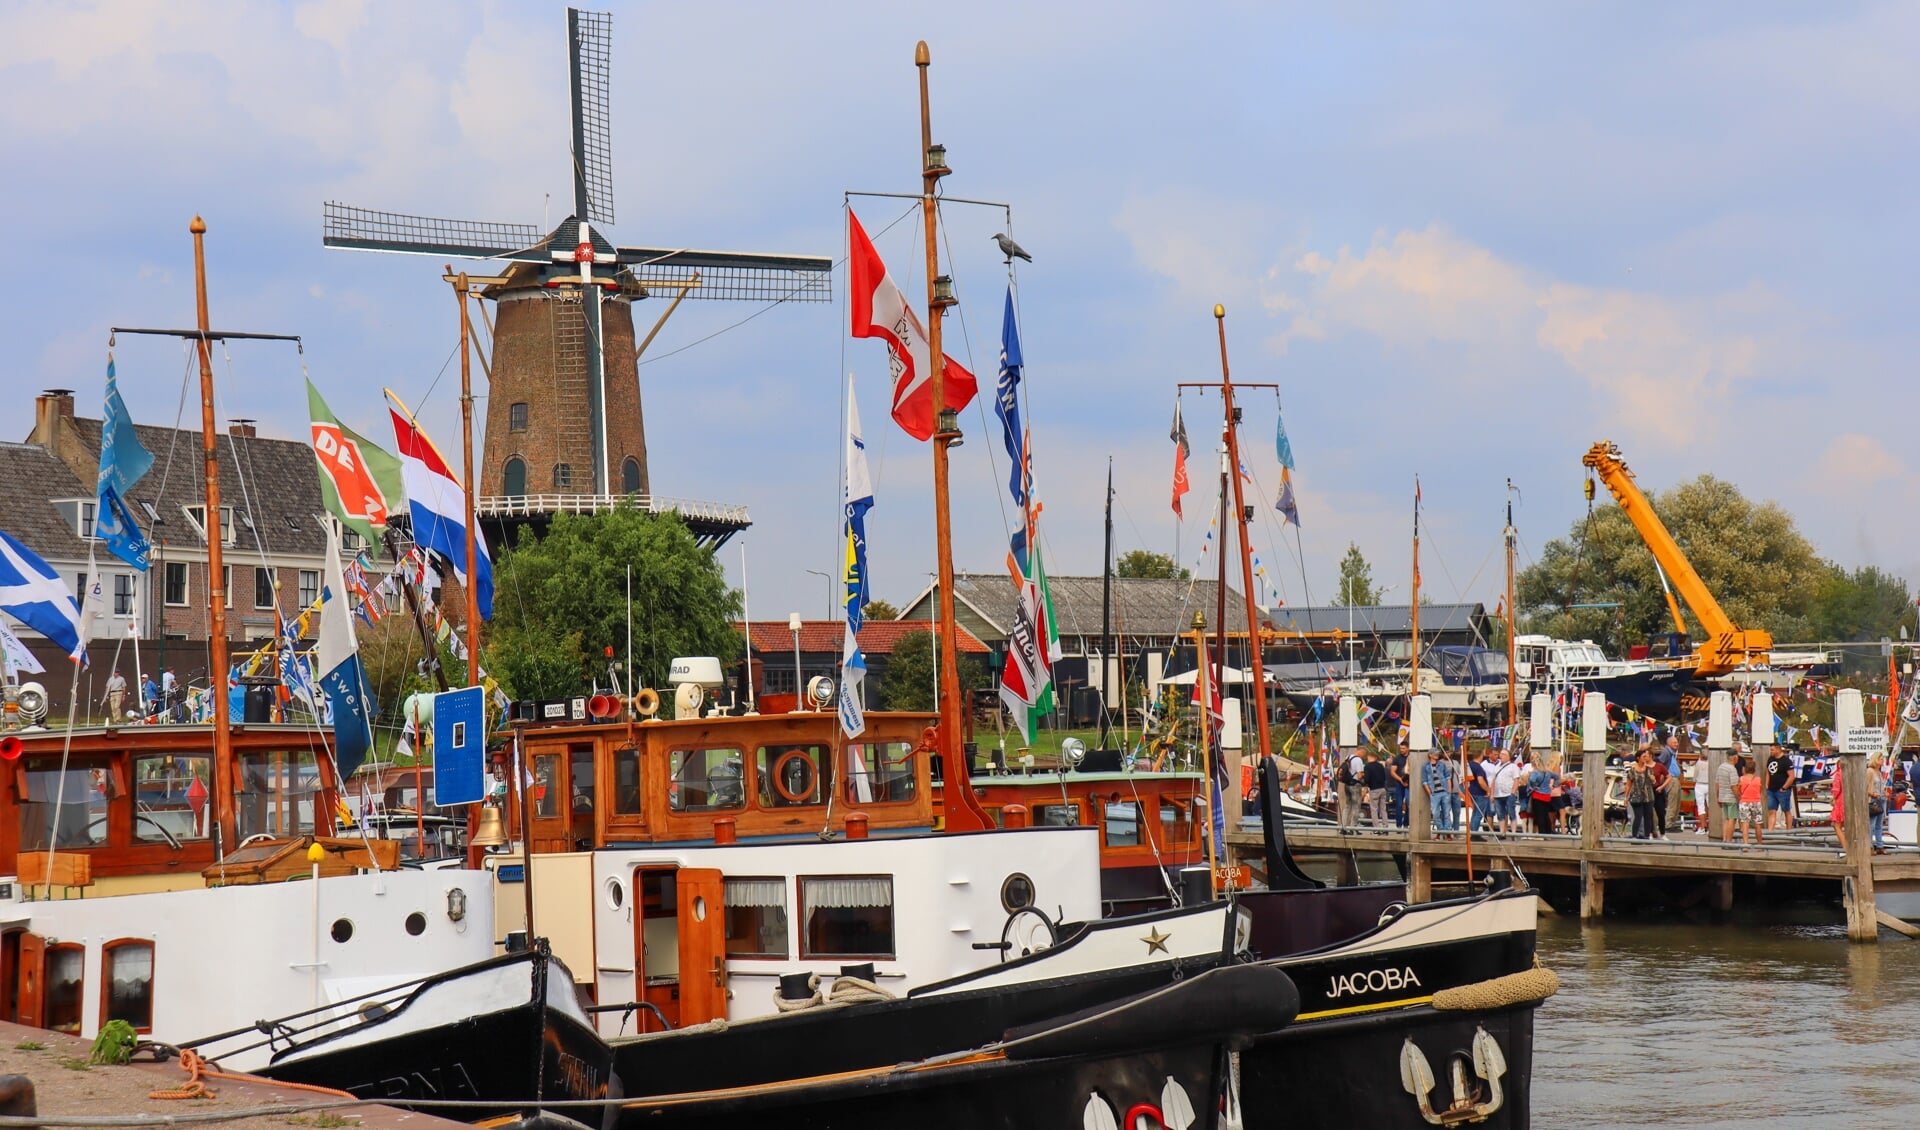 In de haven van Wijk bij Duurstede lagen meer dan tachtig historische vaartuigen